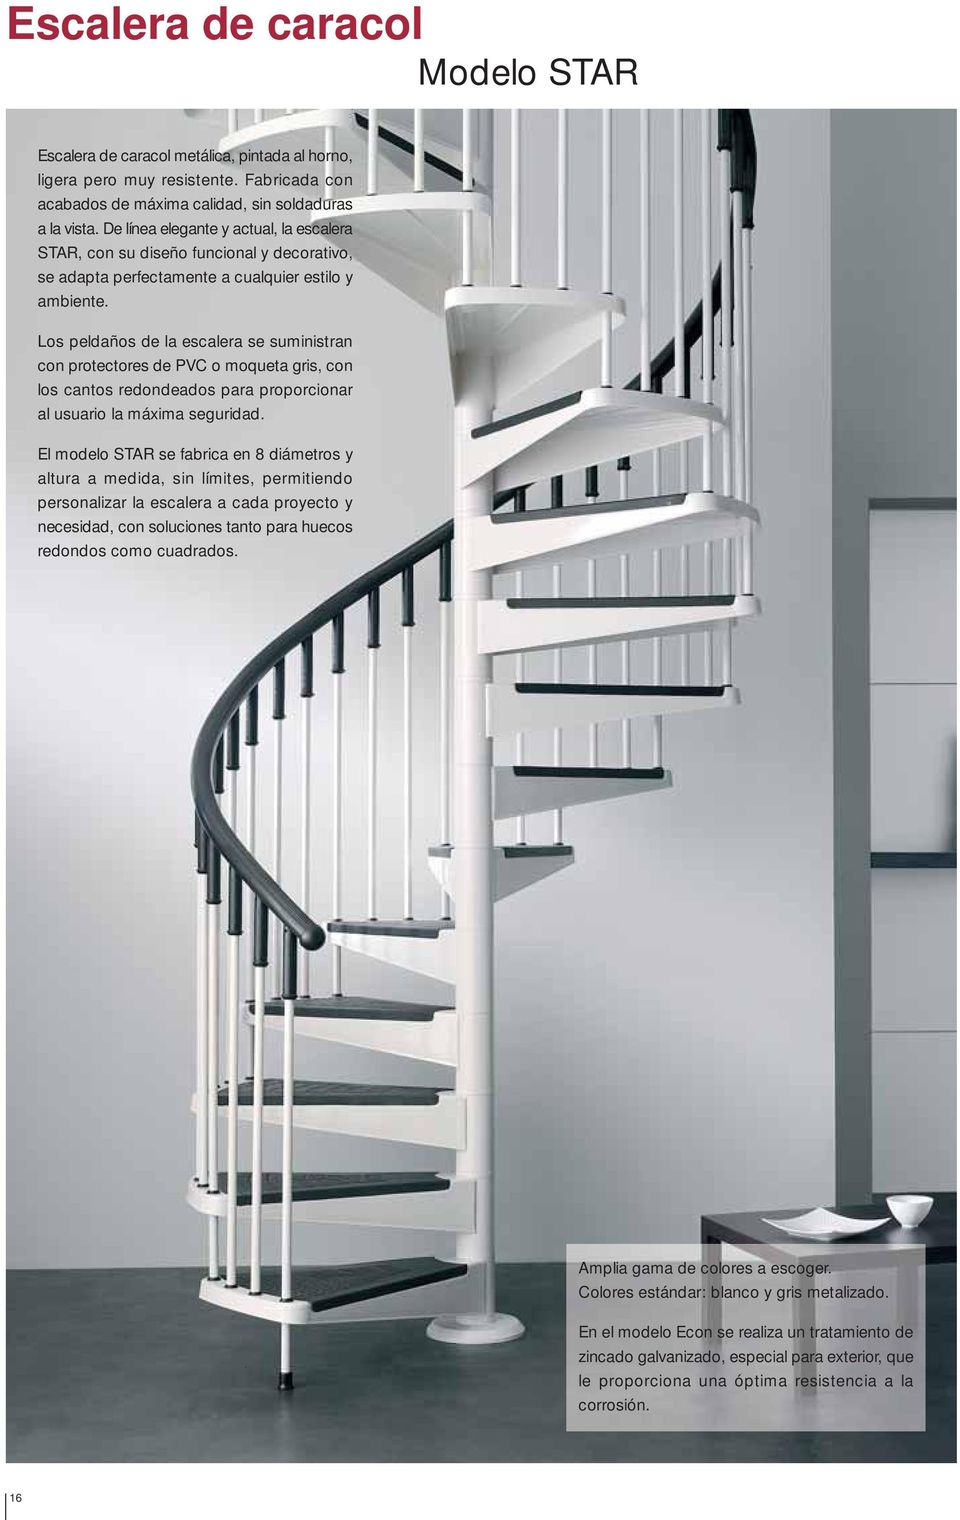 Los peldaños de la escalera se suministran con protectores de PVC o moqueta gris, con los cantos redondeados para proporcionar al usuario la máxima seguridad.